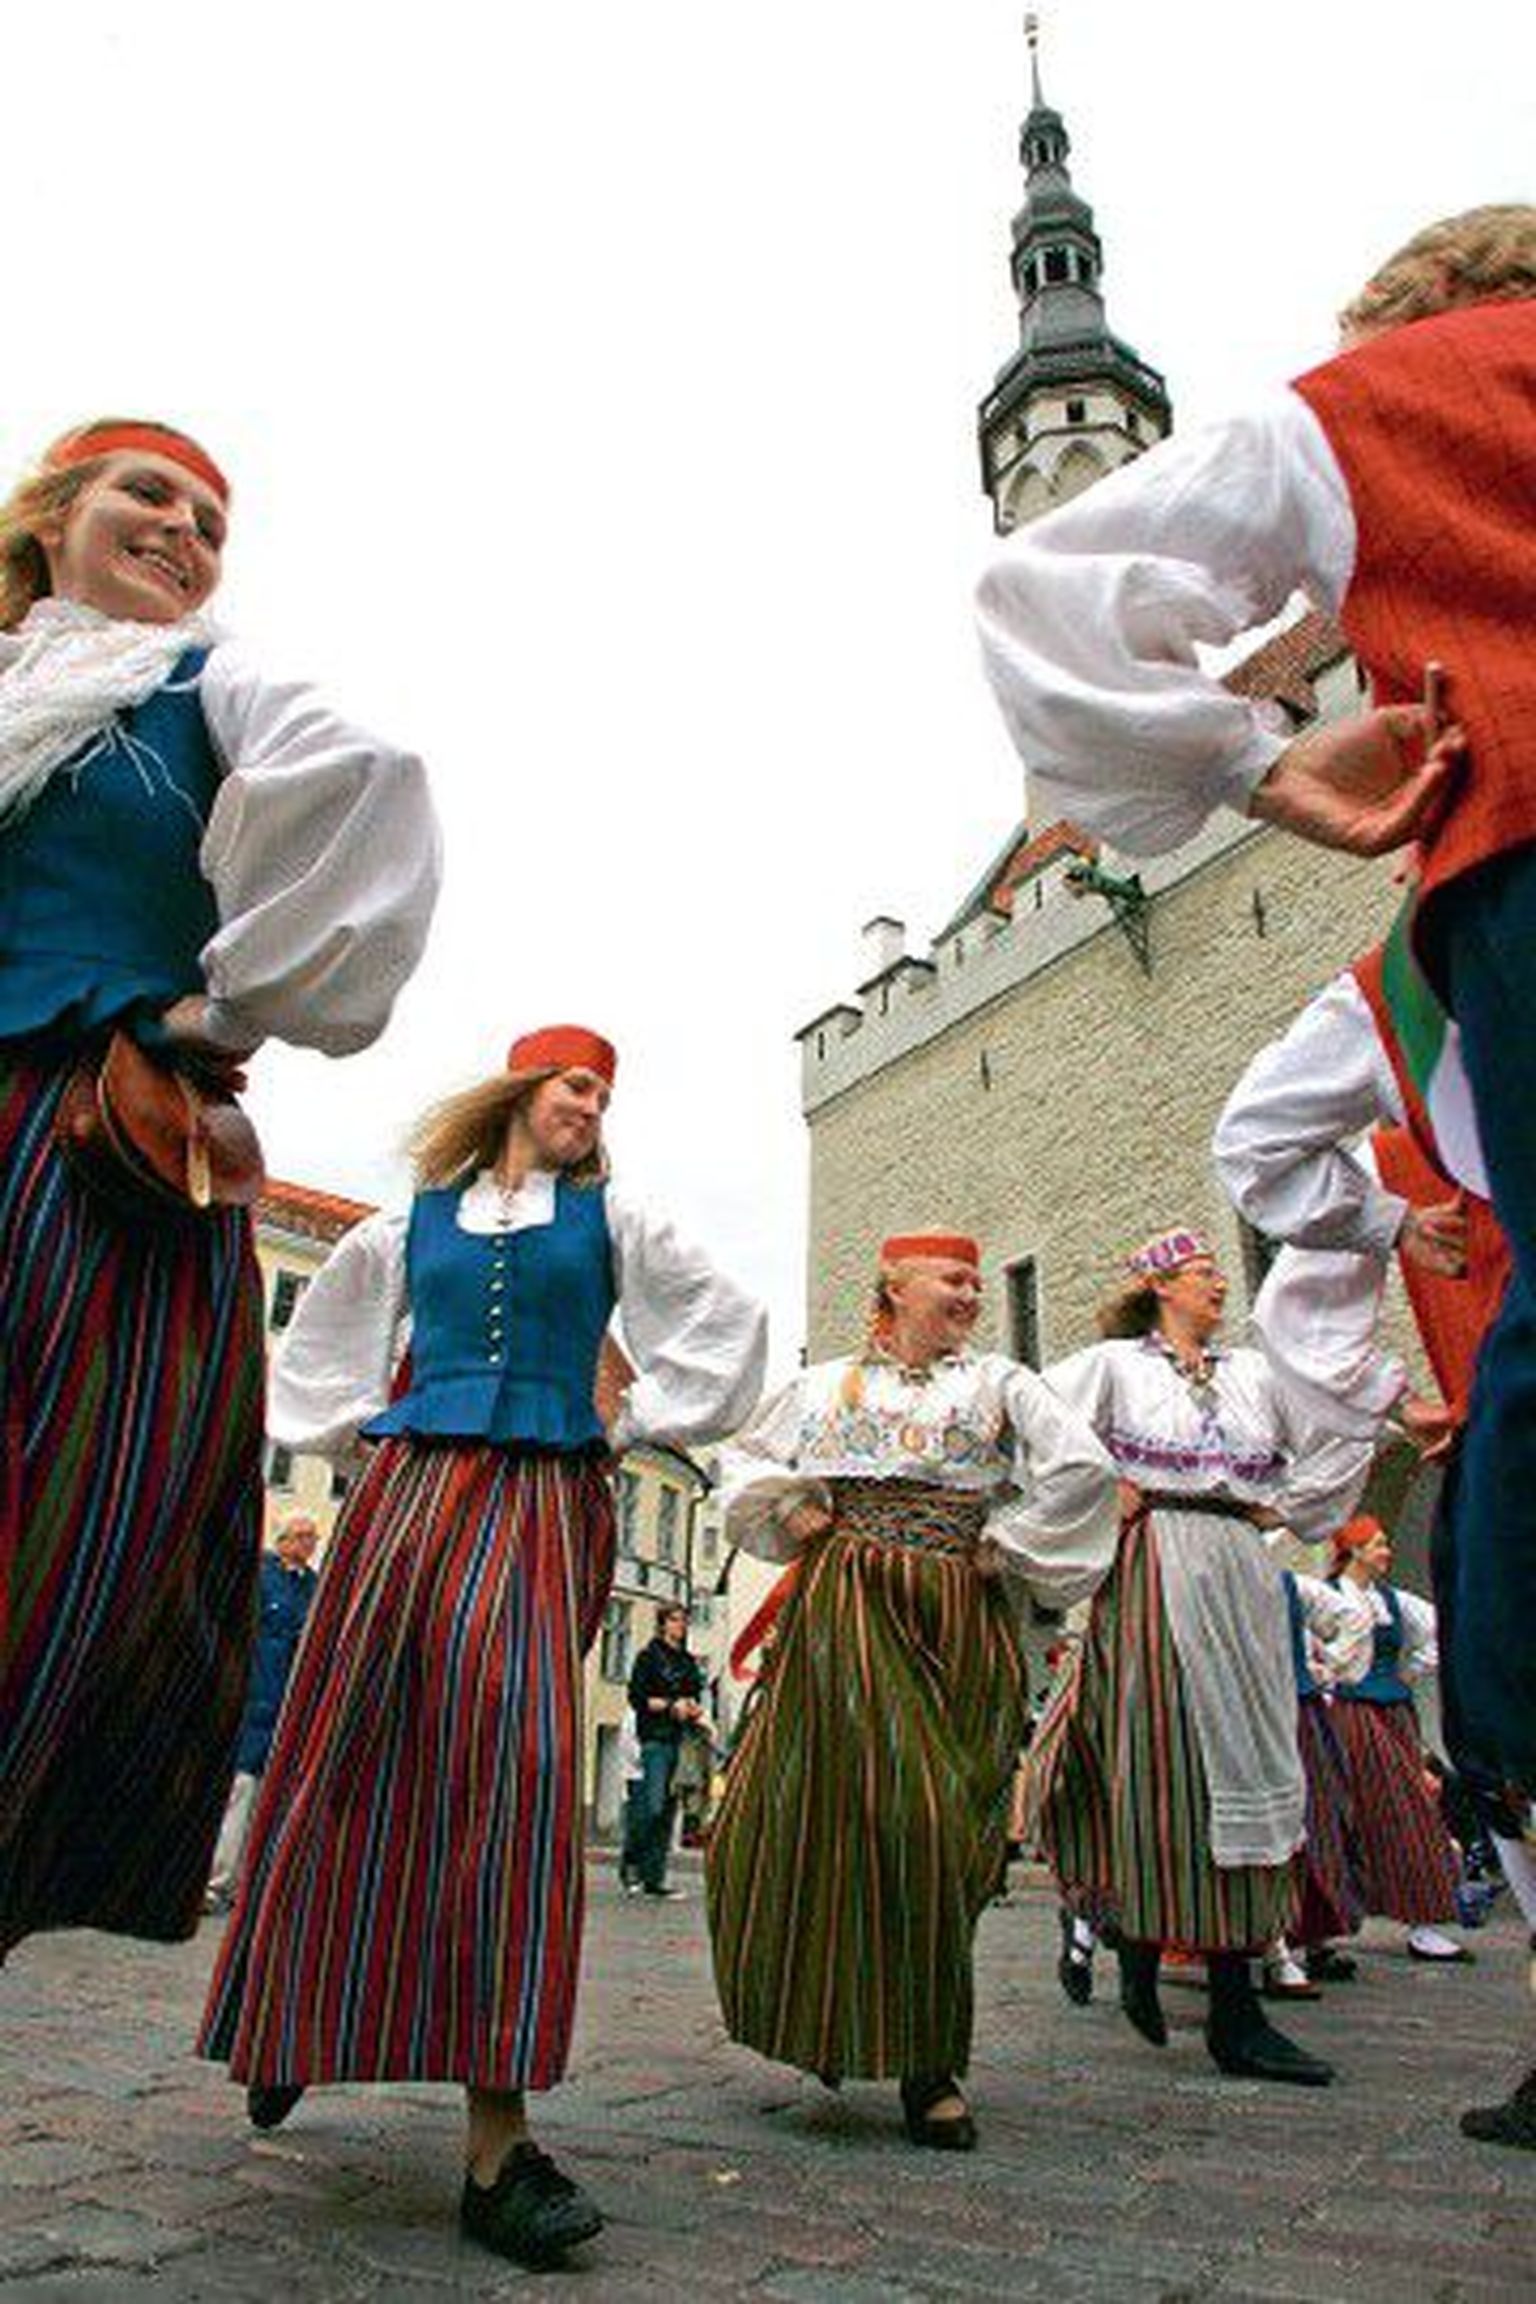 В течение восьми суток в августе участники «Танцующей эстафеты» протанцевали 1000 километров через все 15 уездов Эстонии. Этот беспрецедентный танцевальный марафон символизировал единство народа Эстонии.